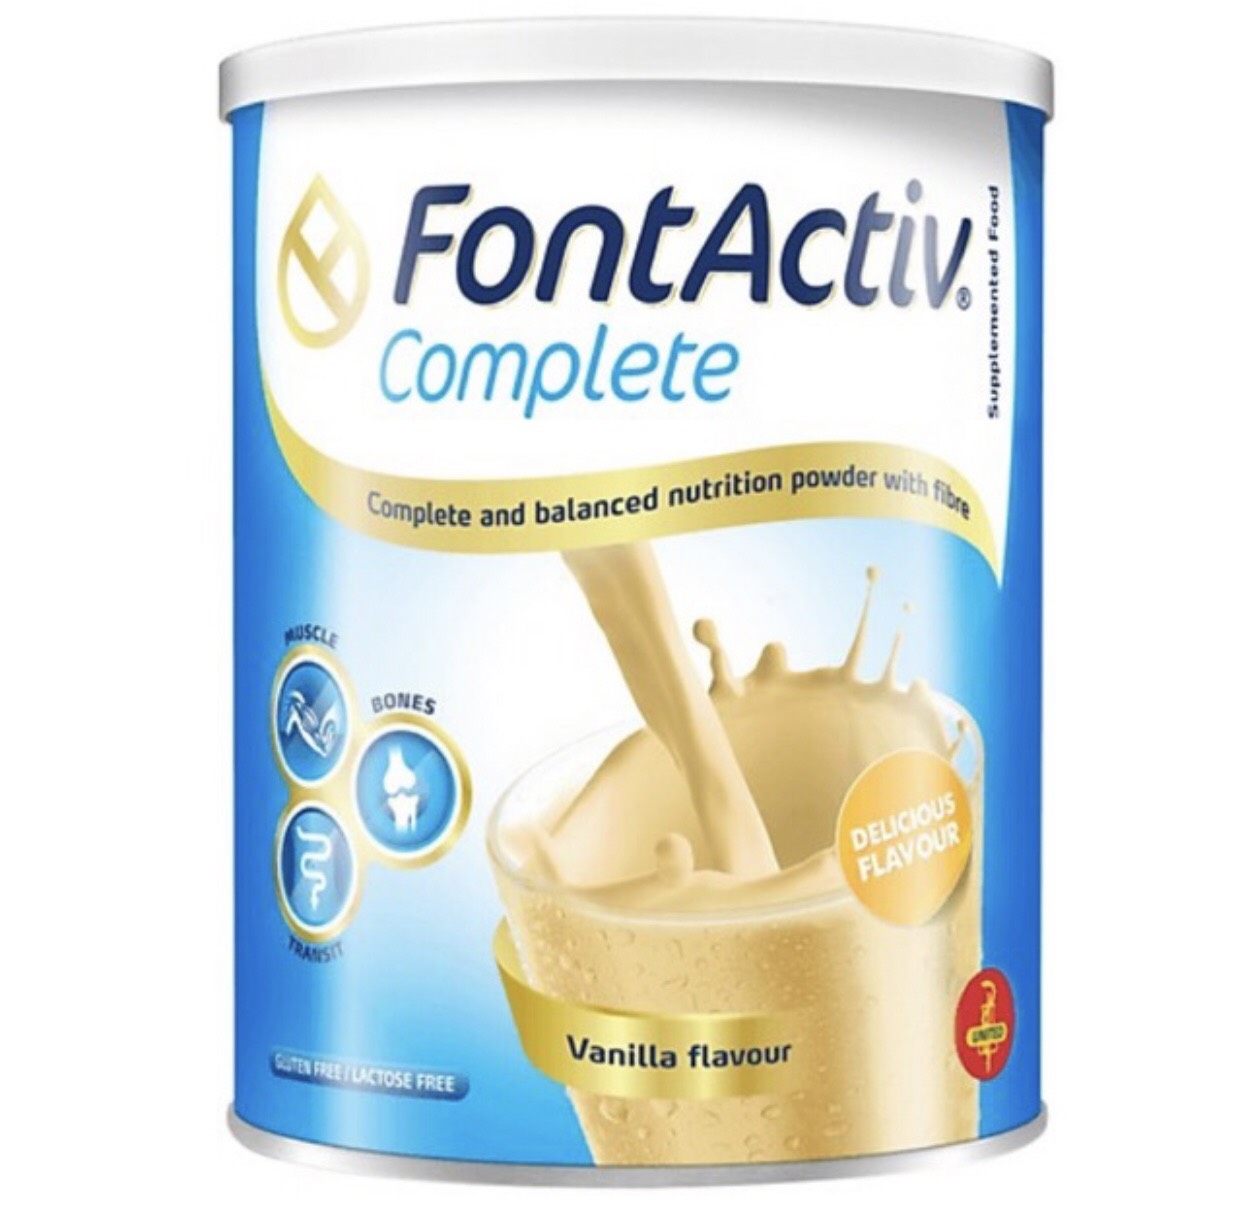 Sữa FontActiv Complete 800g Thực phẩm bổ sung dinh dưỡng cho người ốm yếu